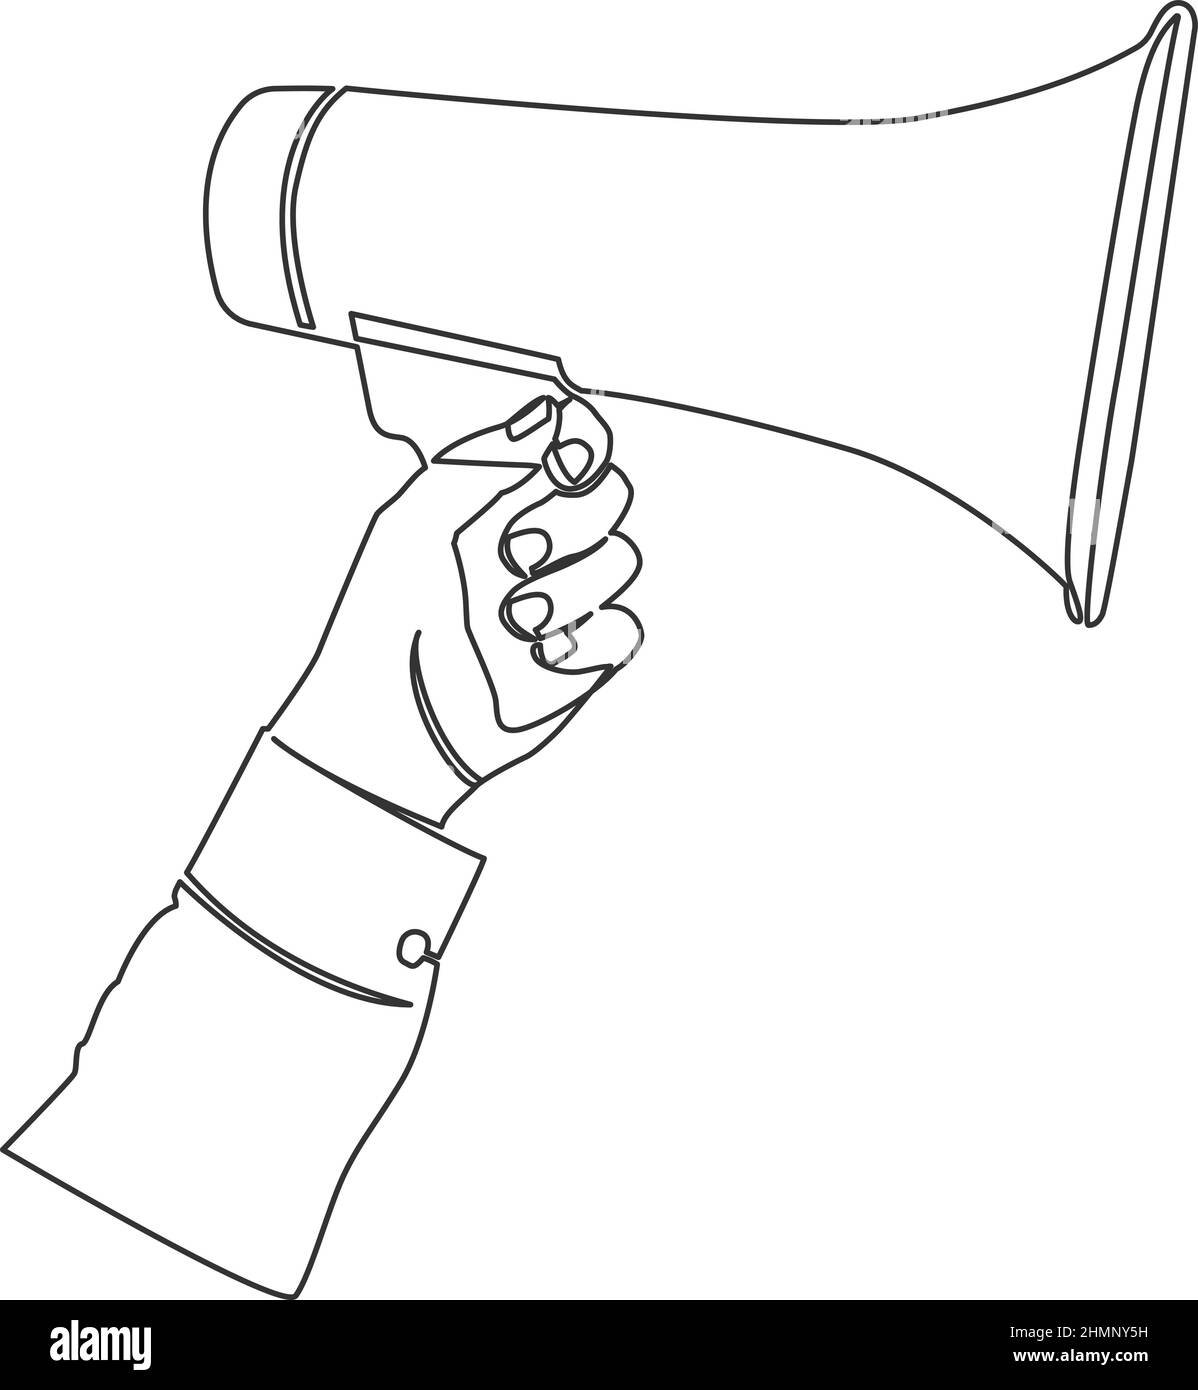 disegno a linea singola del megafono con supporto manuale, illustrazione vettoriale a linea continua Illustrazione Vettoriale